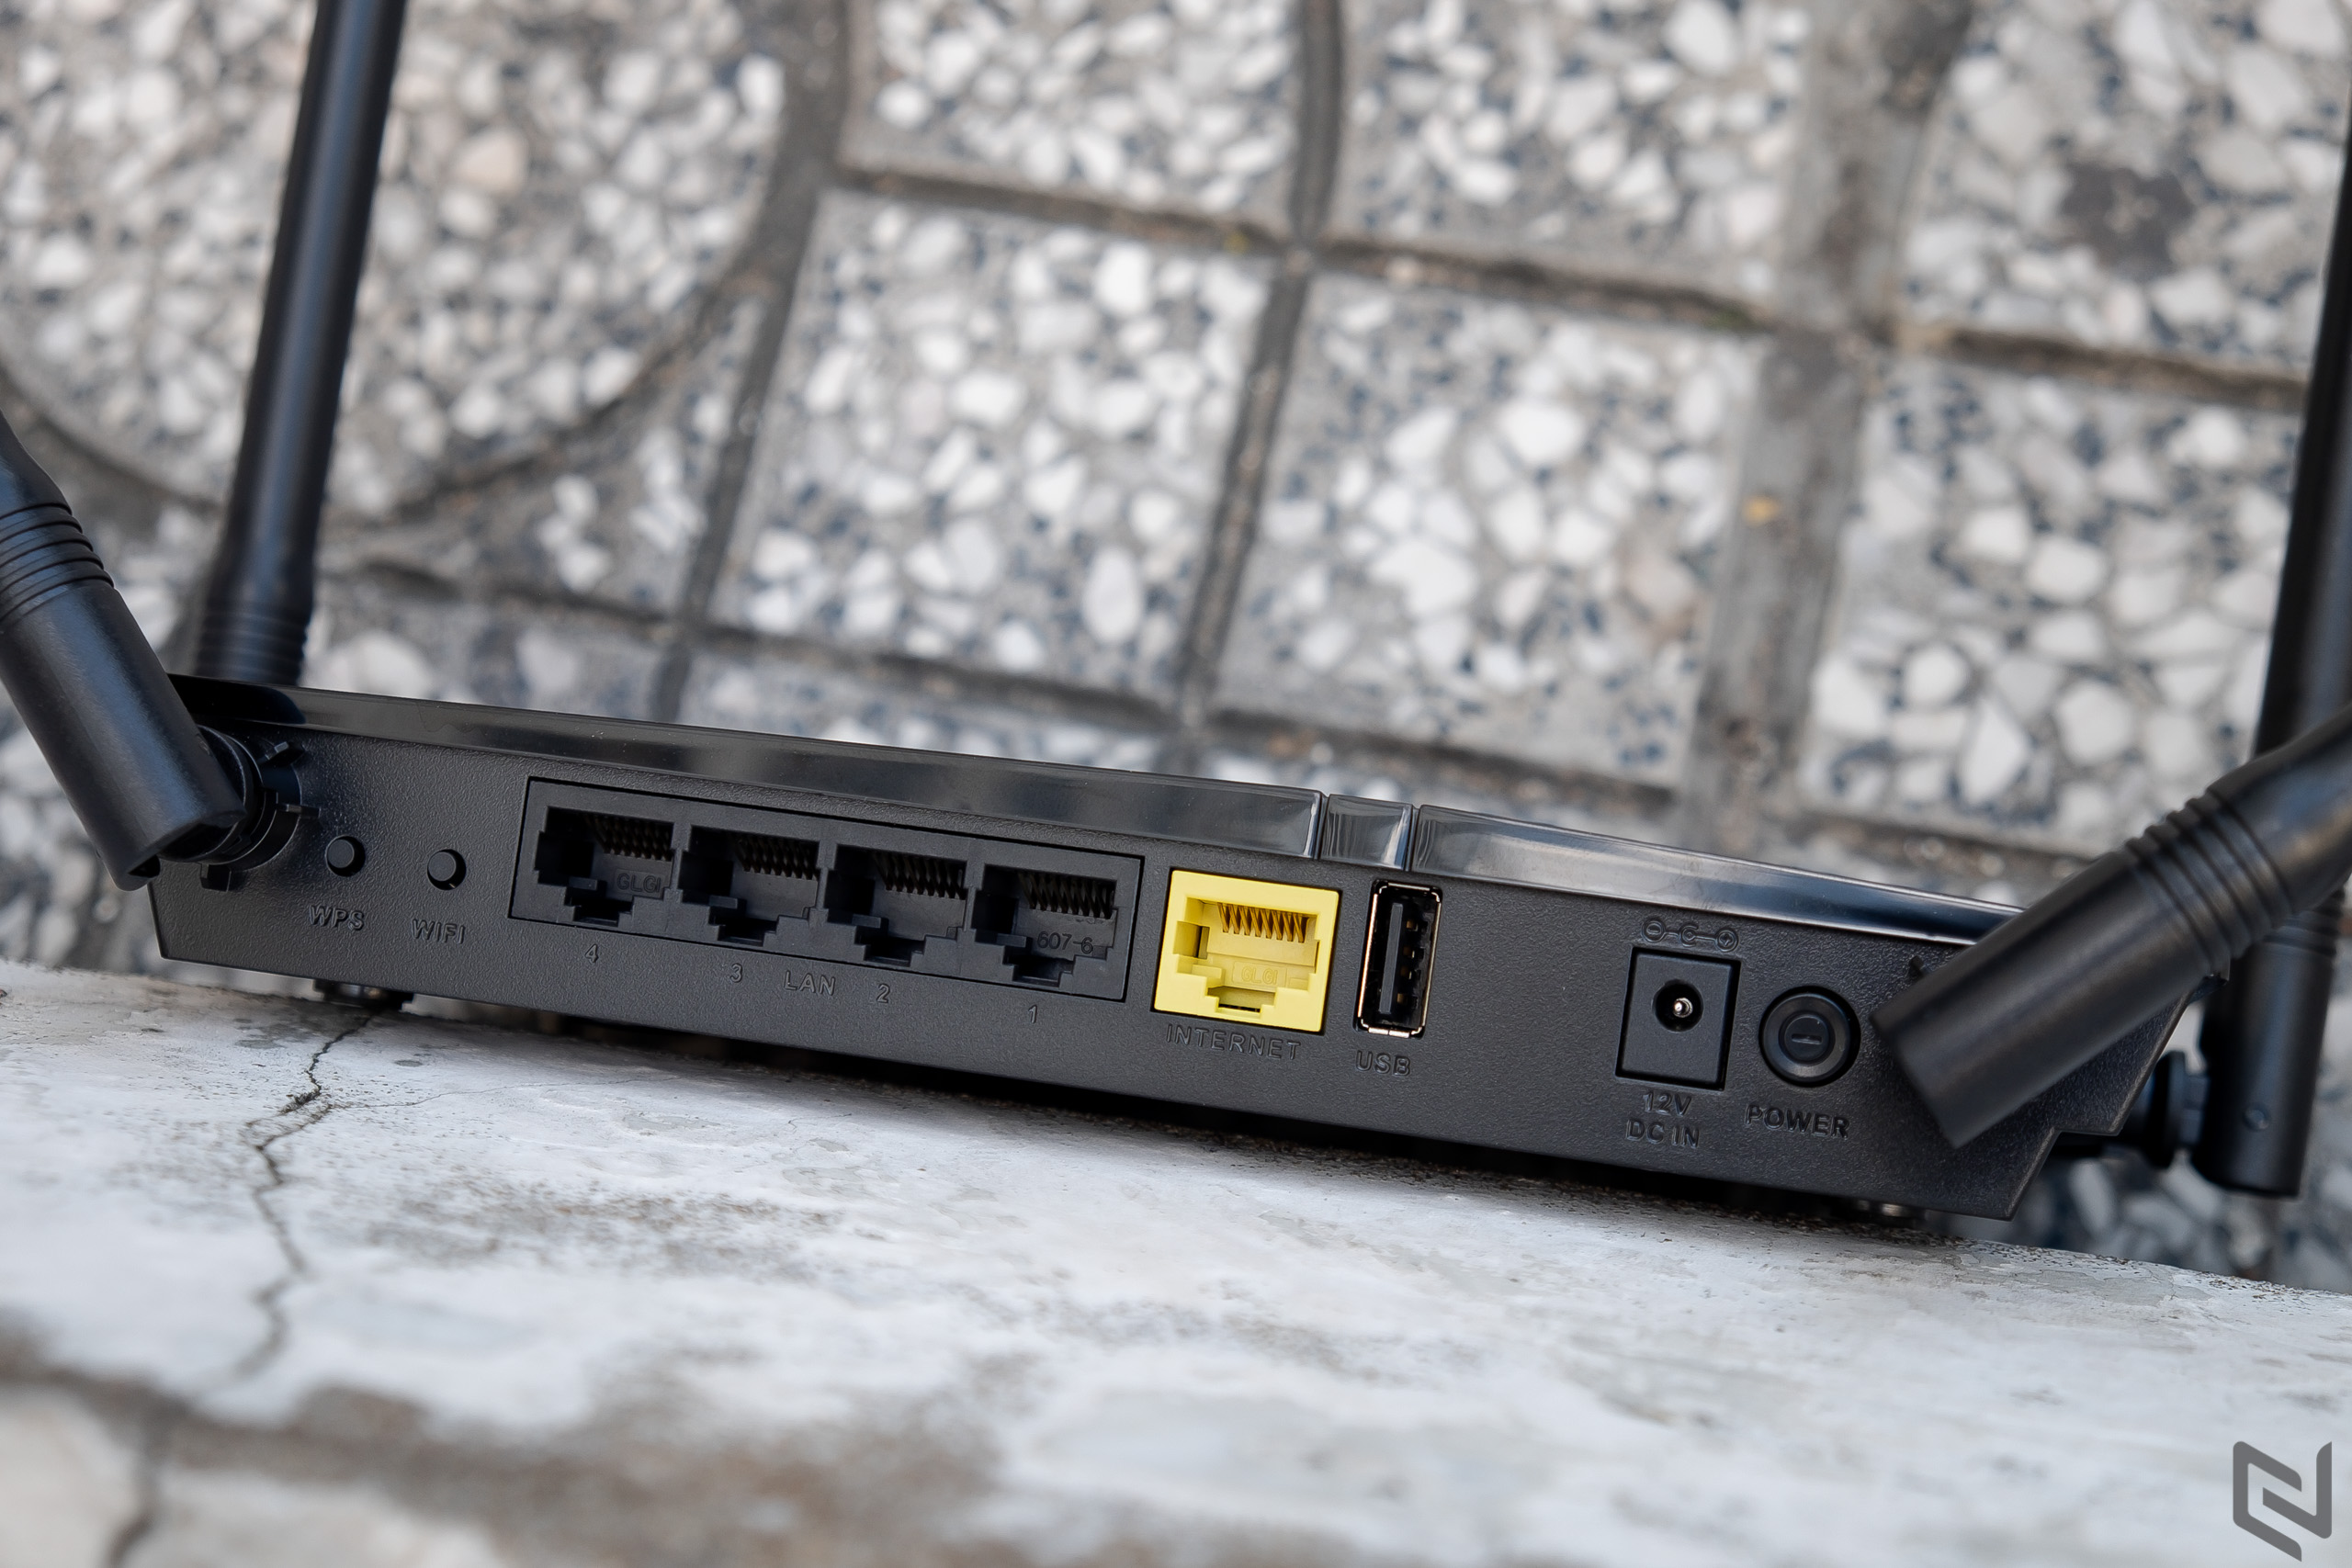 Đánh giá router D-Link DIR-825+, độ lợi sóng cao 4 x 7dBi, nhiều tính năng, giá 1.5 triệu đồng